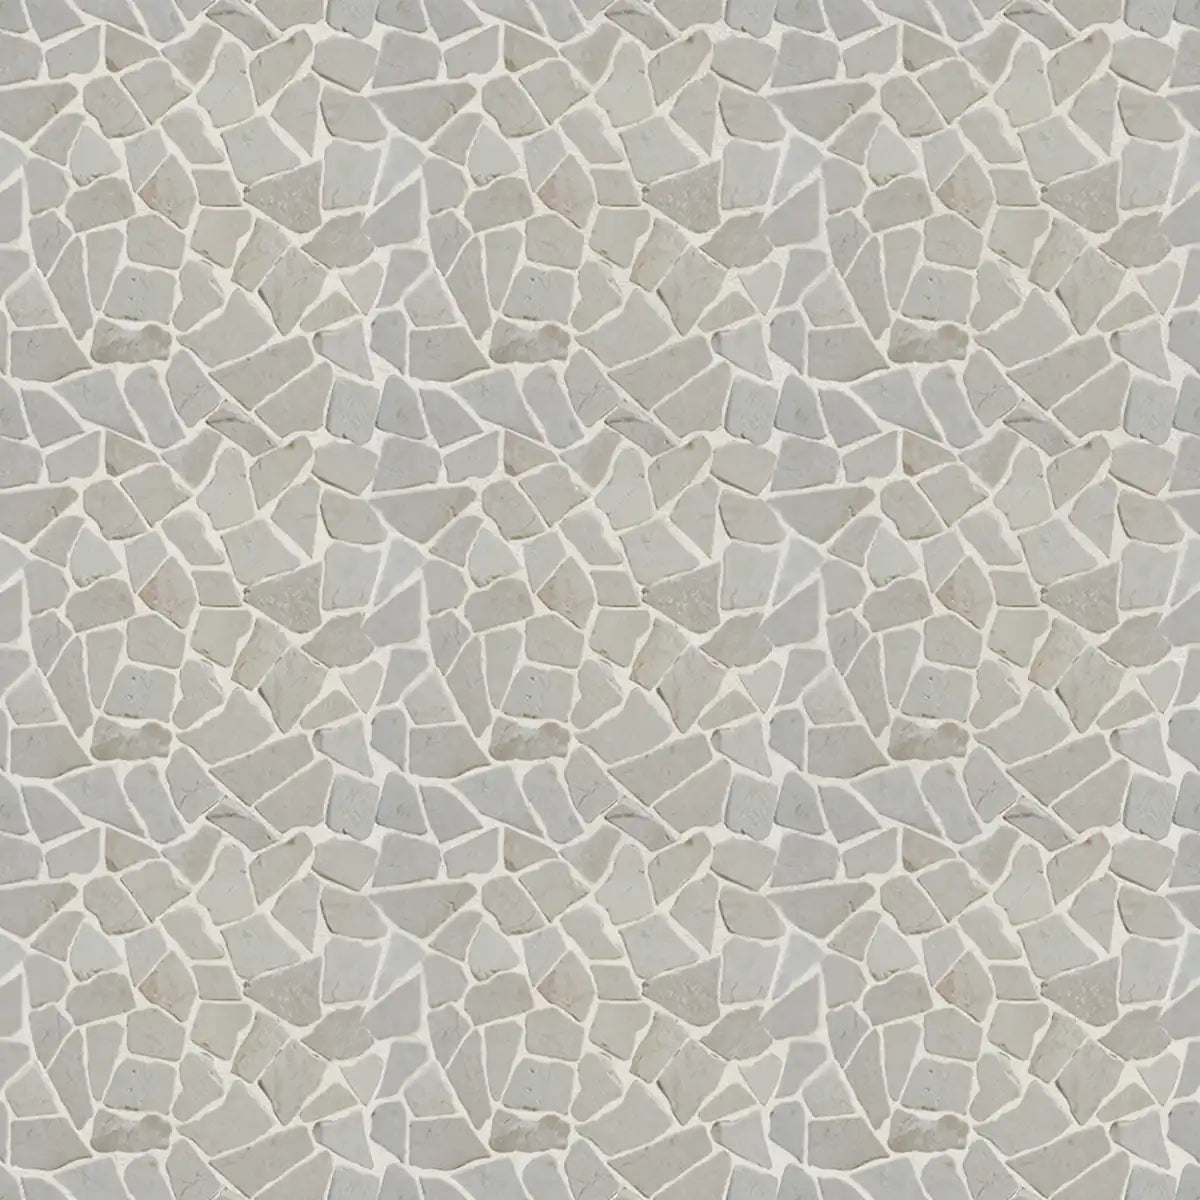 Mosaic white marble irregular